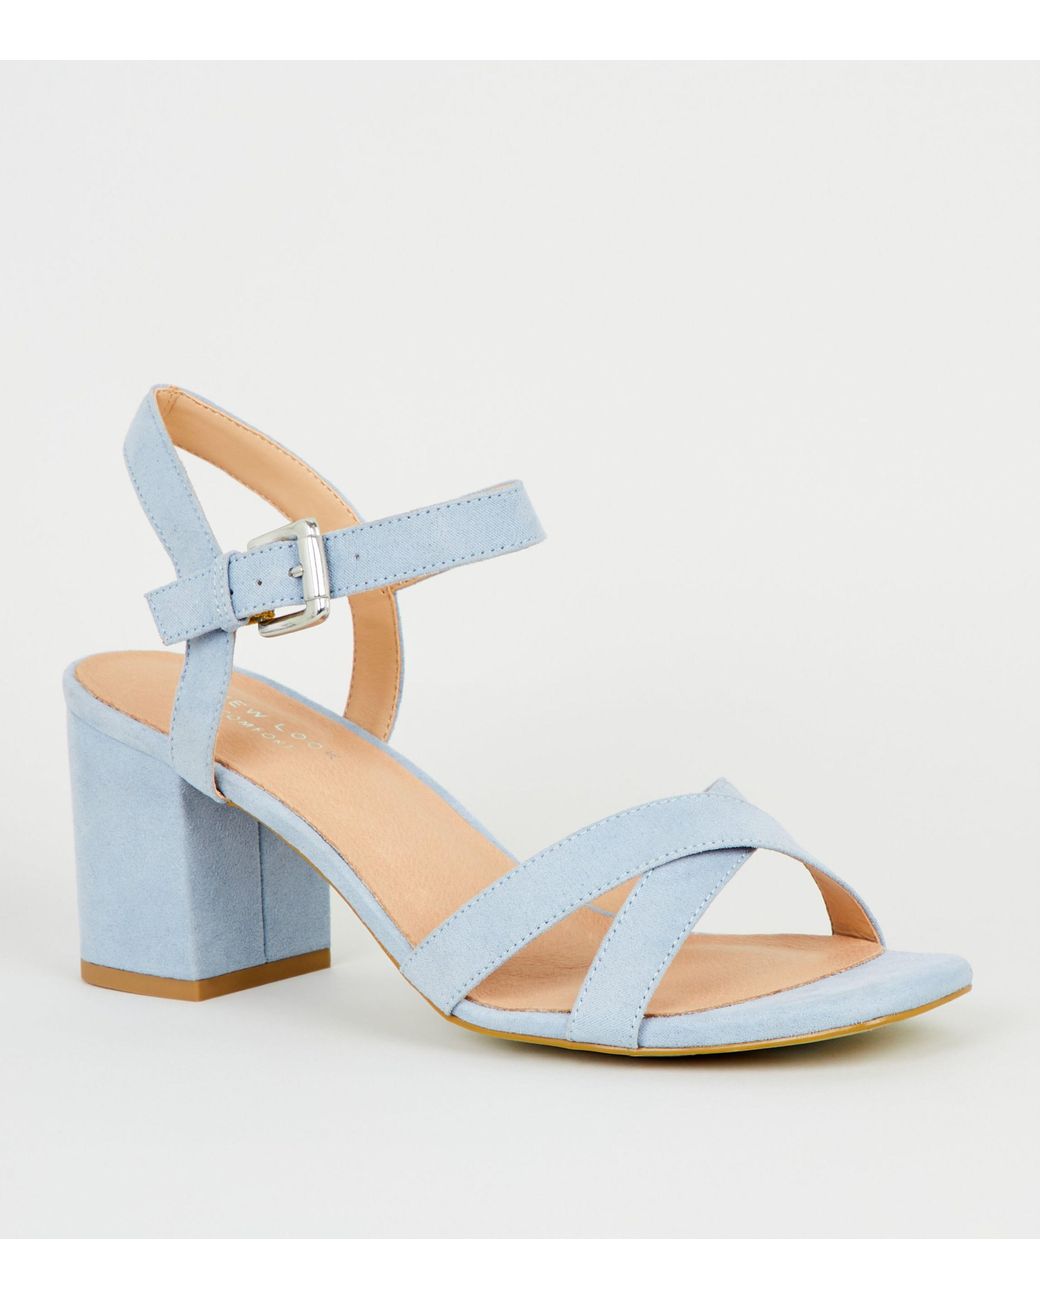 New Look Pale Blue Comfort Flex Low Block Heel Sandals | Lyst UK